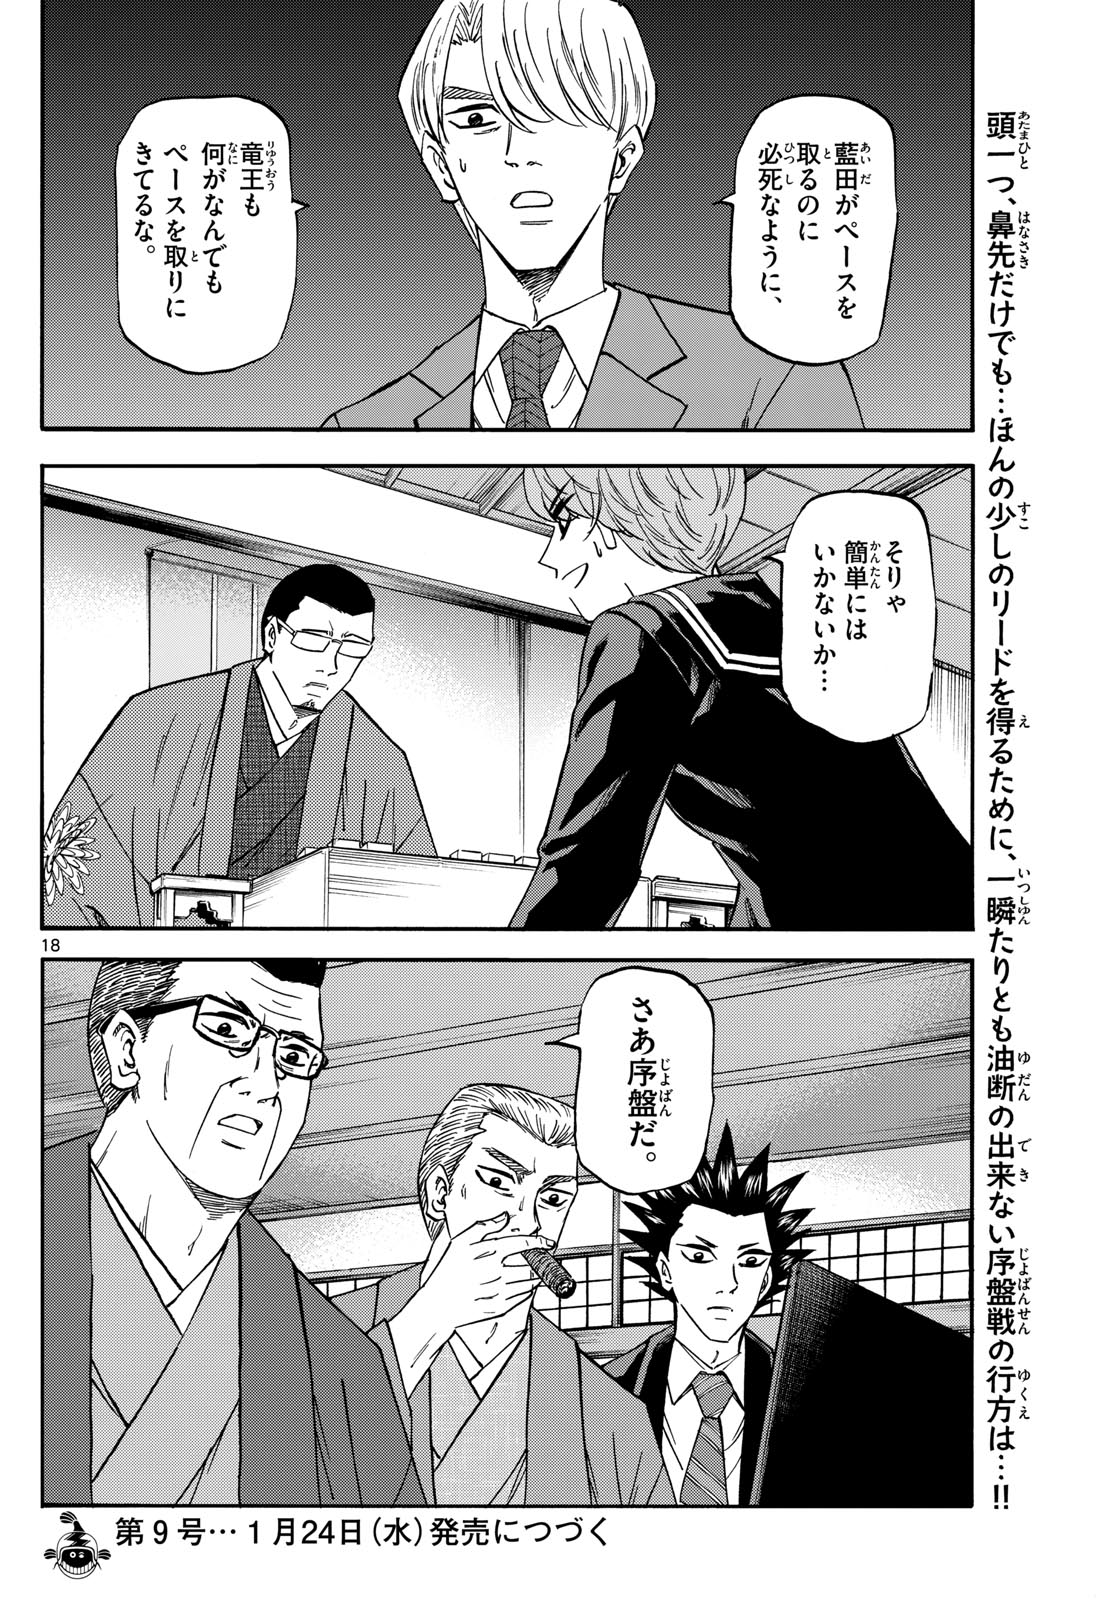 Tatsu to Ichigo - Chapter 175 - Page 18